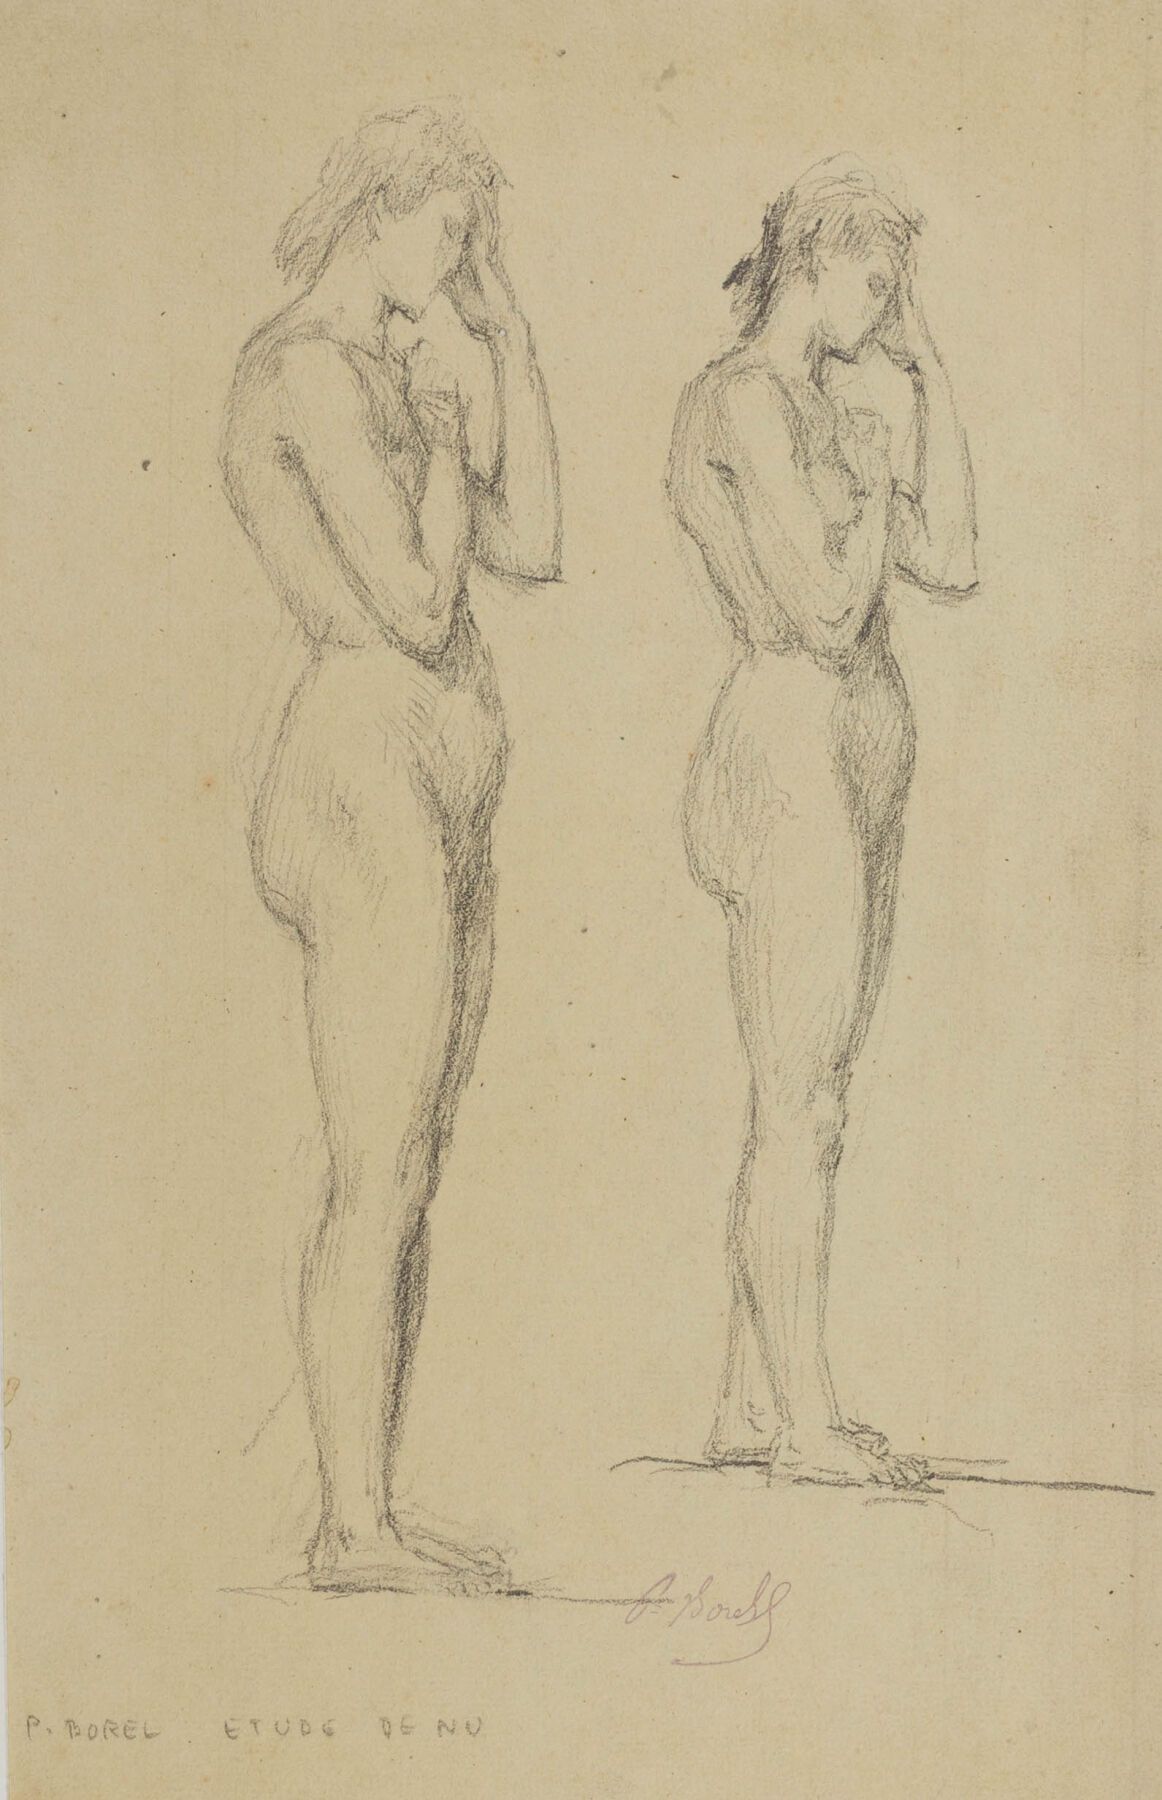 Null Paul BOREL (1828-1913).
Etude de nus.
Dessin.
H_34,7 cm L_22,3 cm